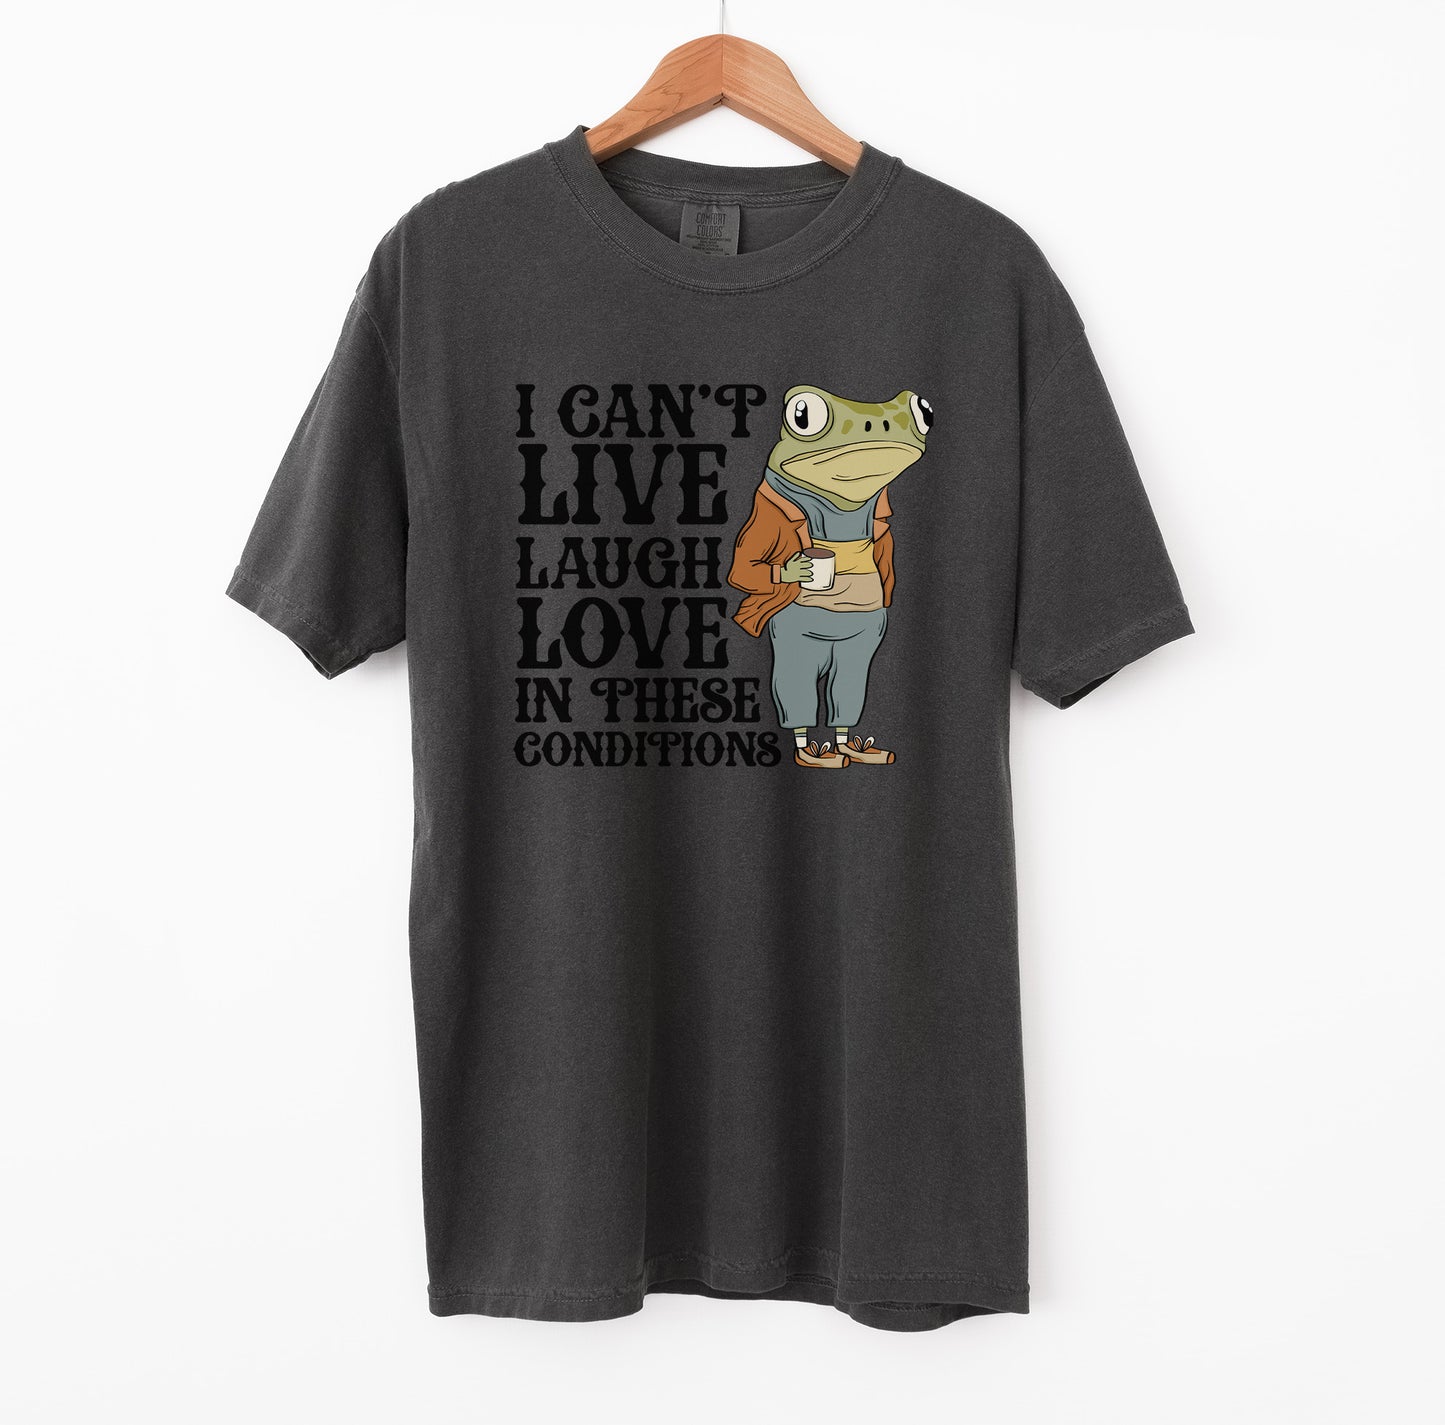 Live Laugh Love T-Shirt